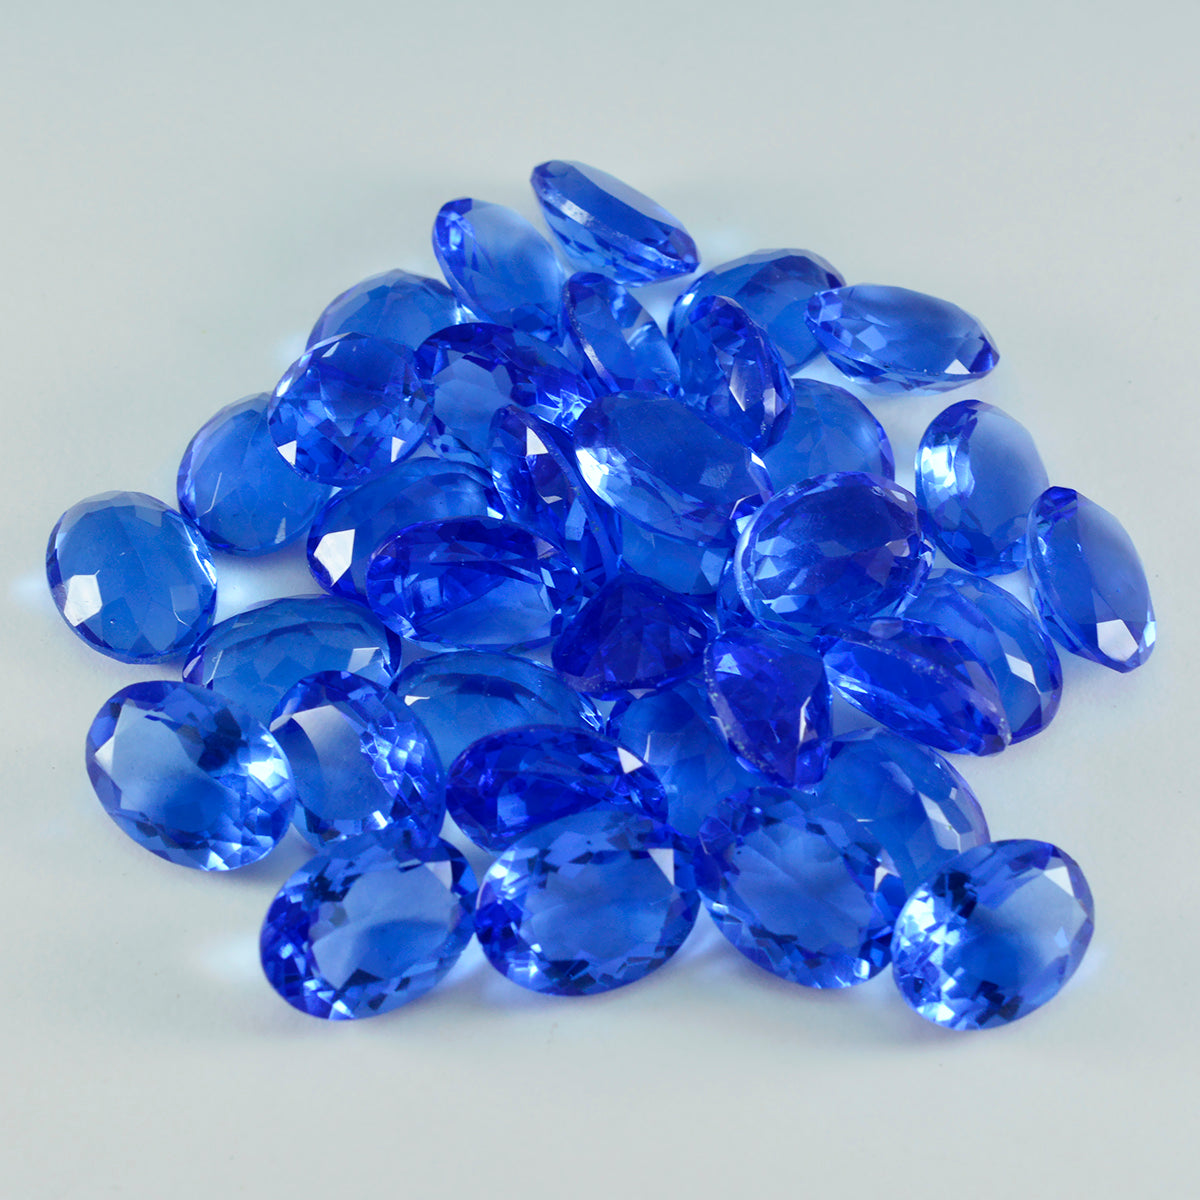 Riyogems 1 Stück blauer Saphir, CZ, facettiert, 9 x 11 mm, ovale Form, schöner Qualitätsedelstein